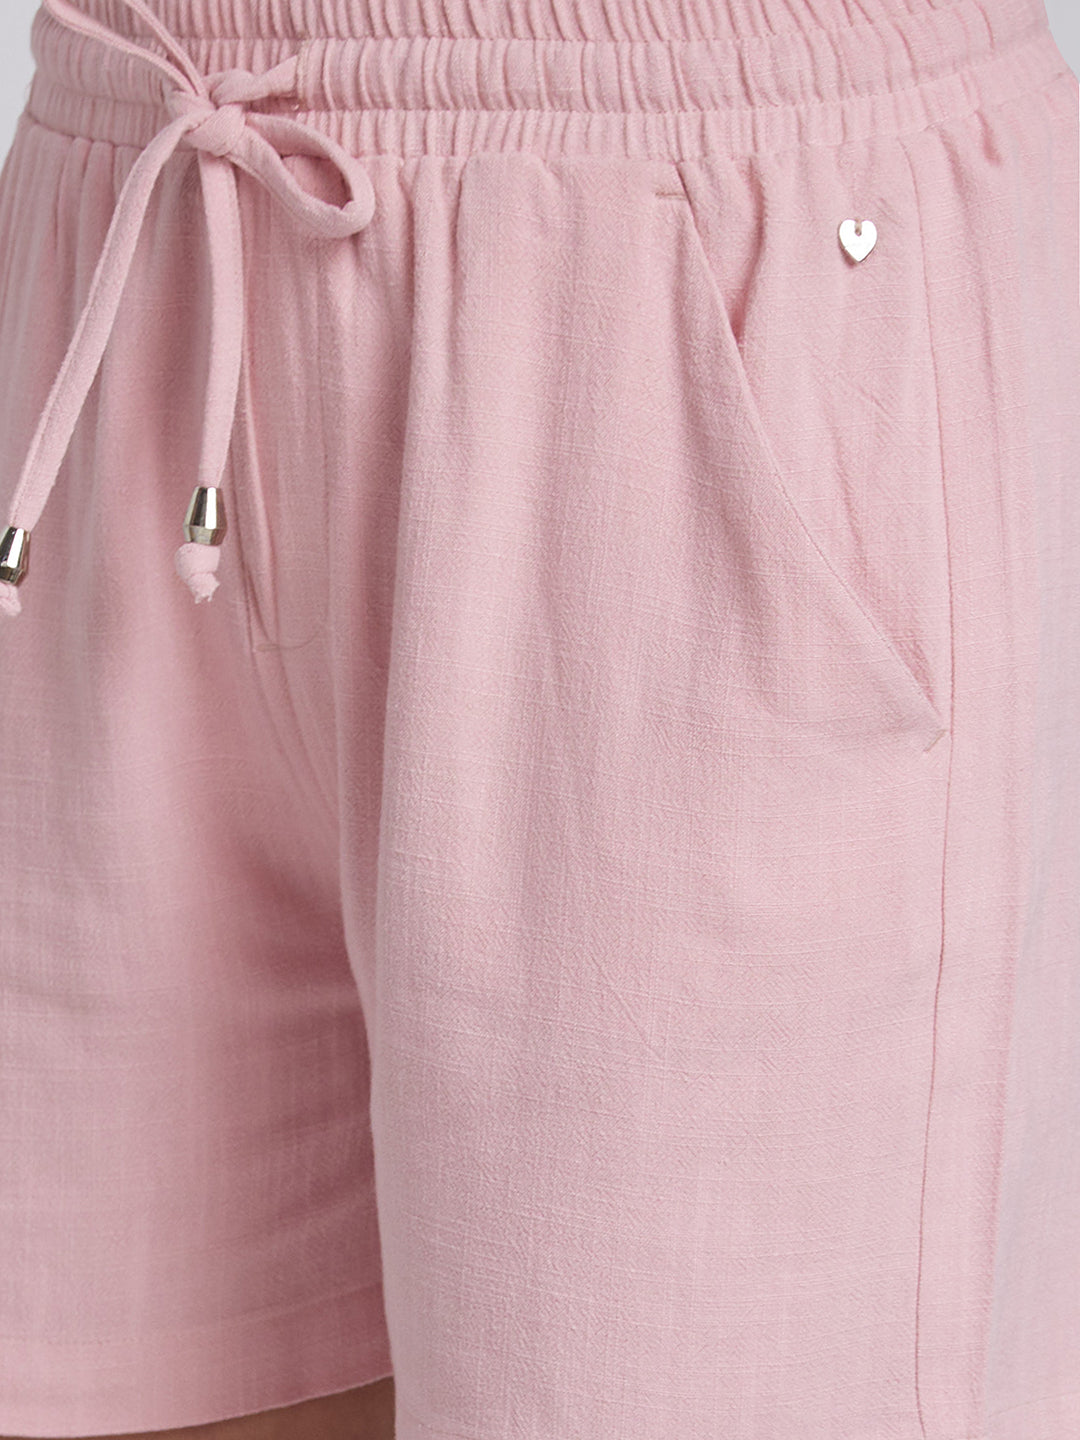 Spykar Women Pink Cotton Blend Regular Fit Shorts